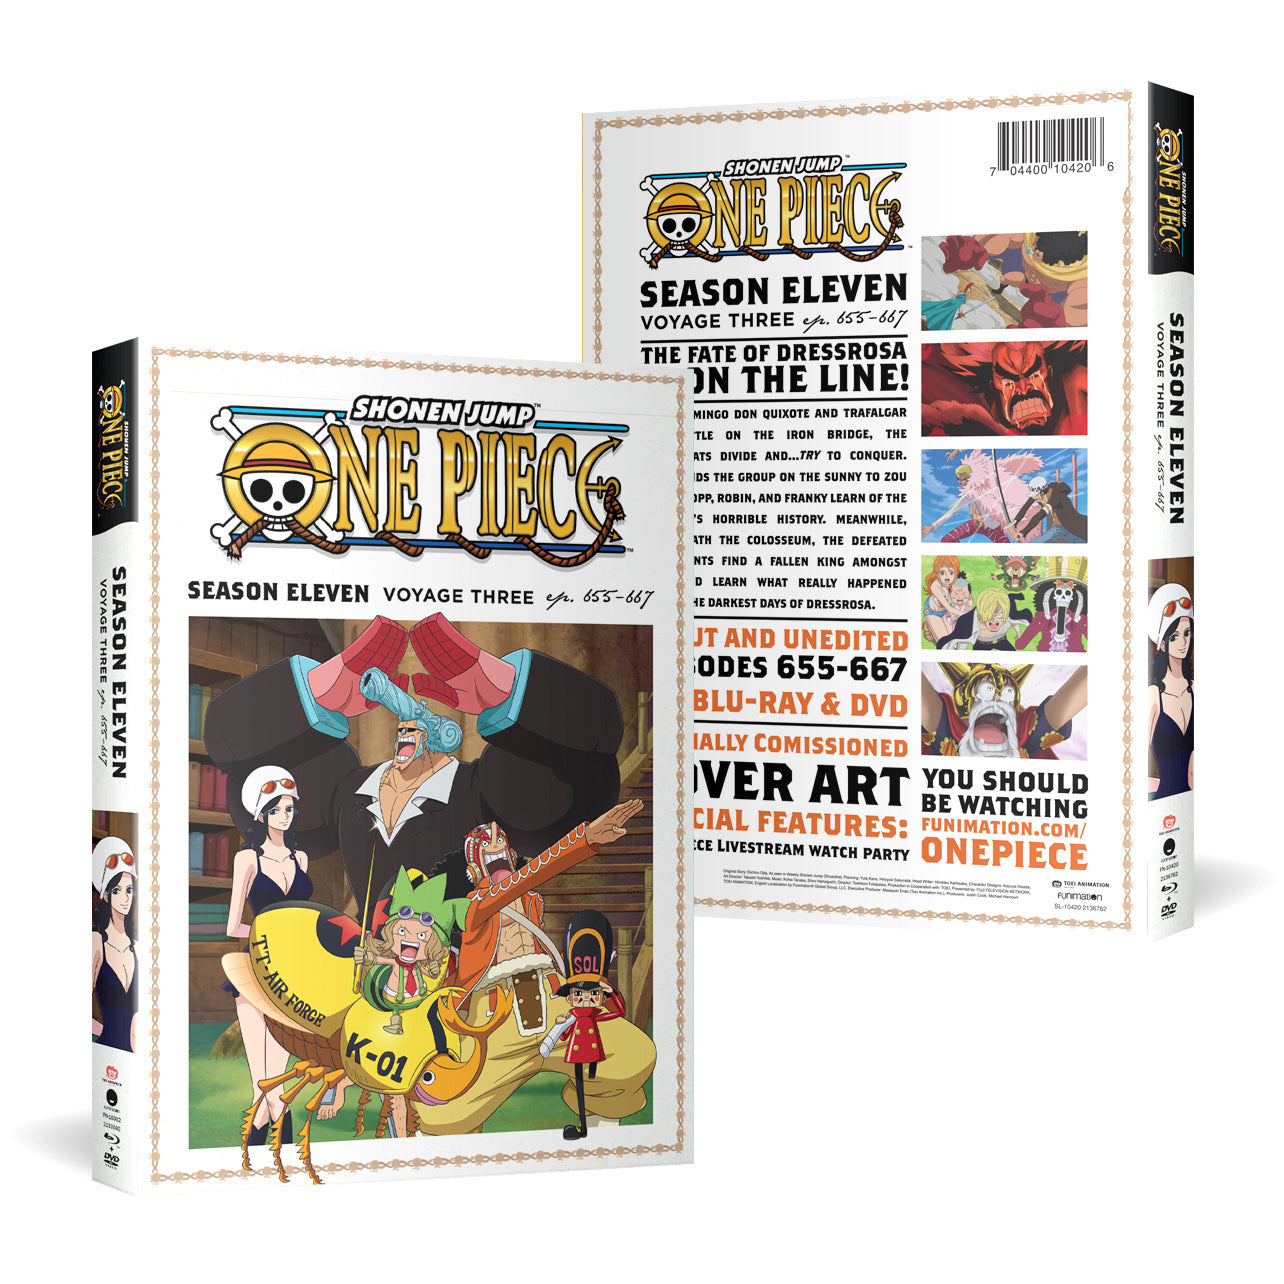 One Piece - Season Eleven Voyage Three - BD/DVD image count 0